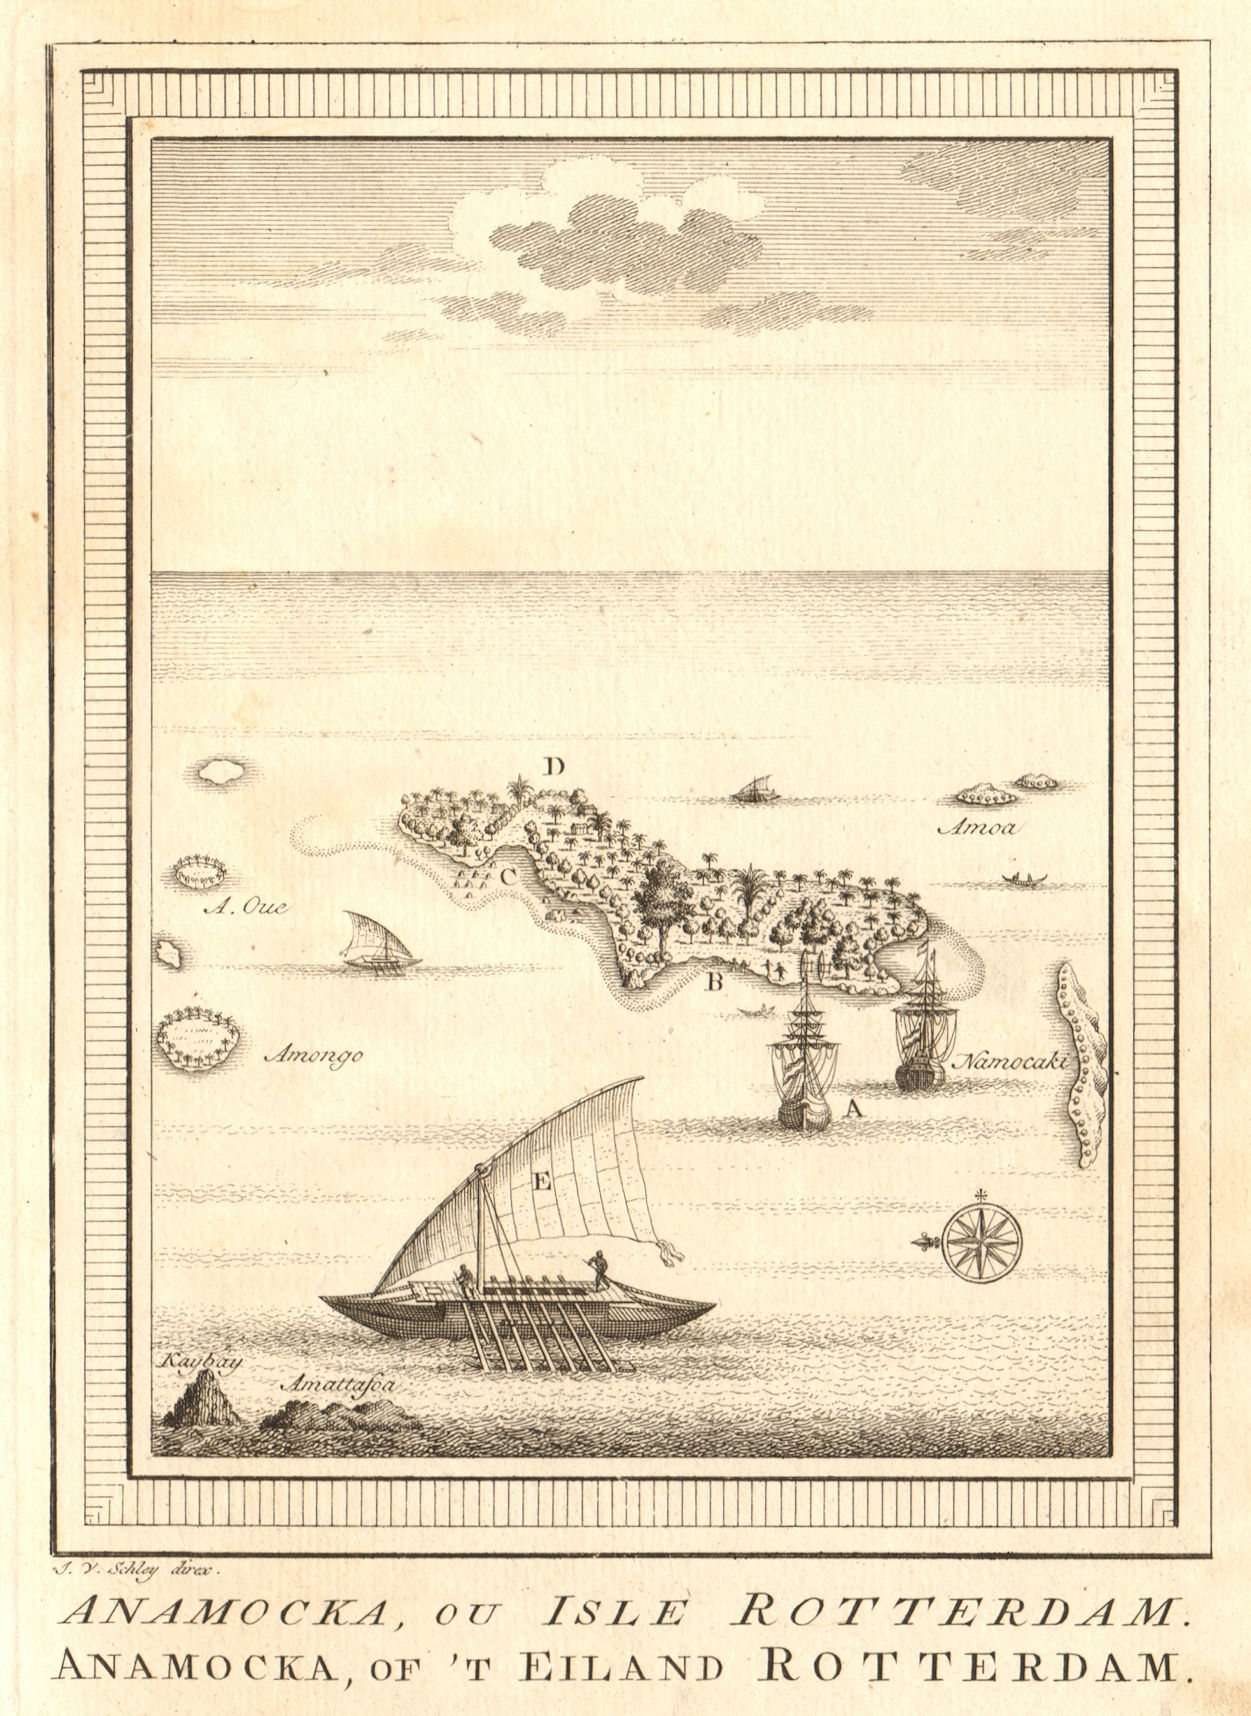 'Anamocka ou Isle Rotterdam'. Nomuka island Tonga. Abel Tasman 1643. SCHLEY 1758